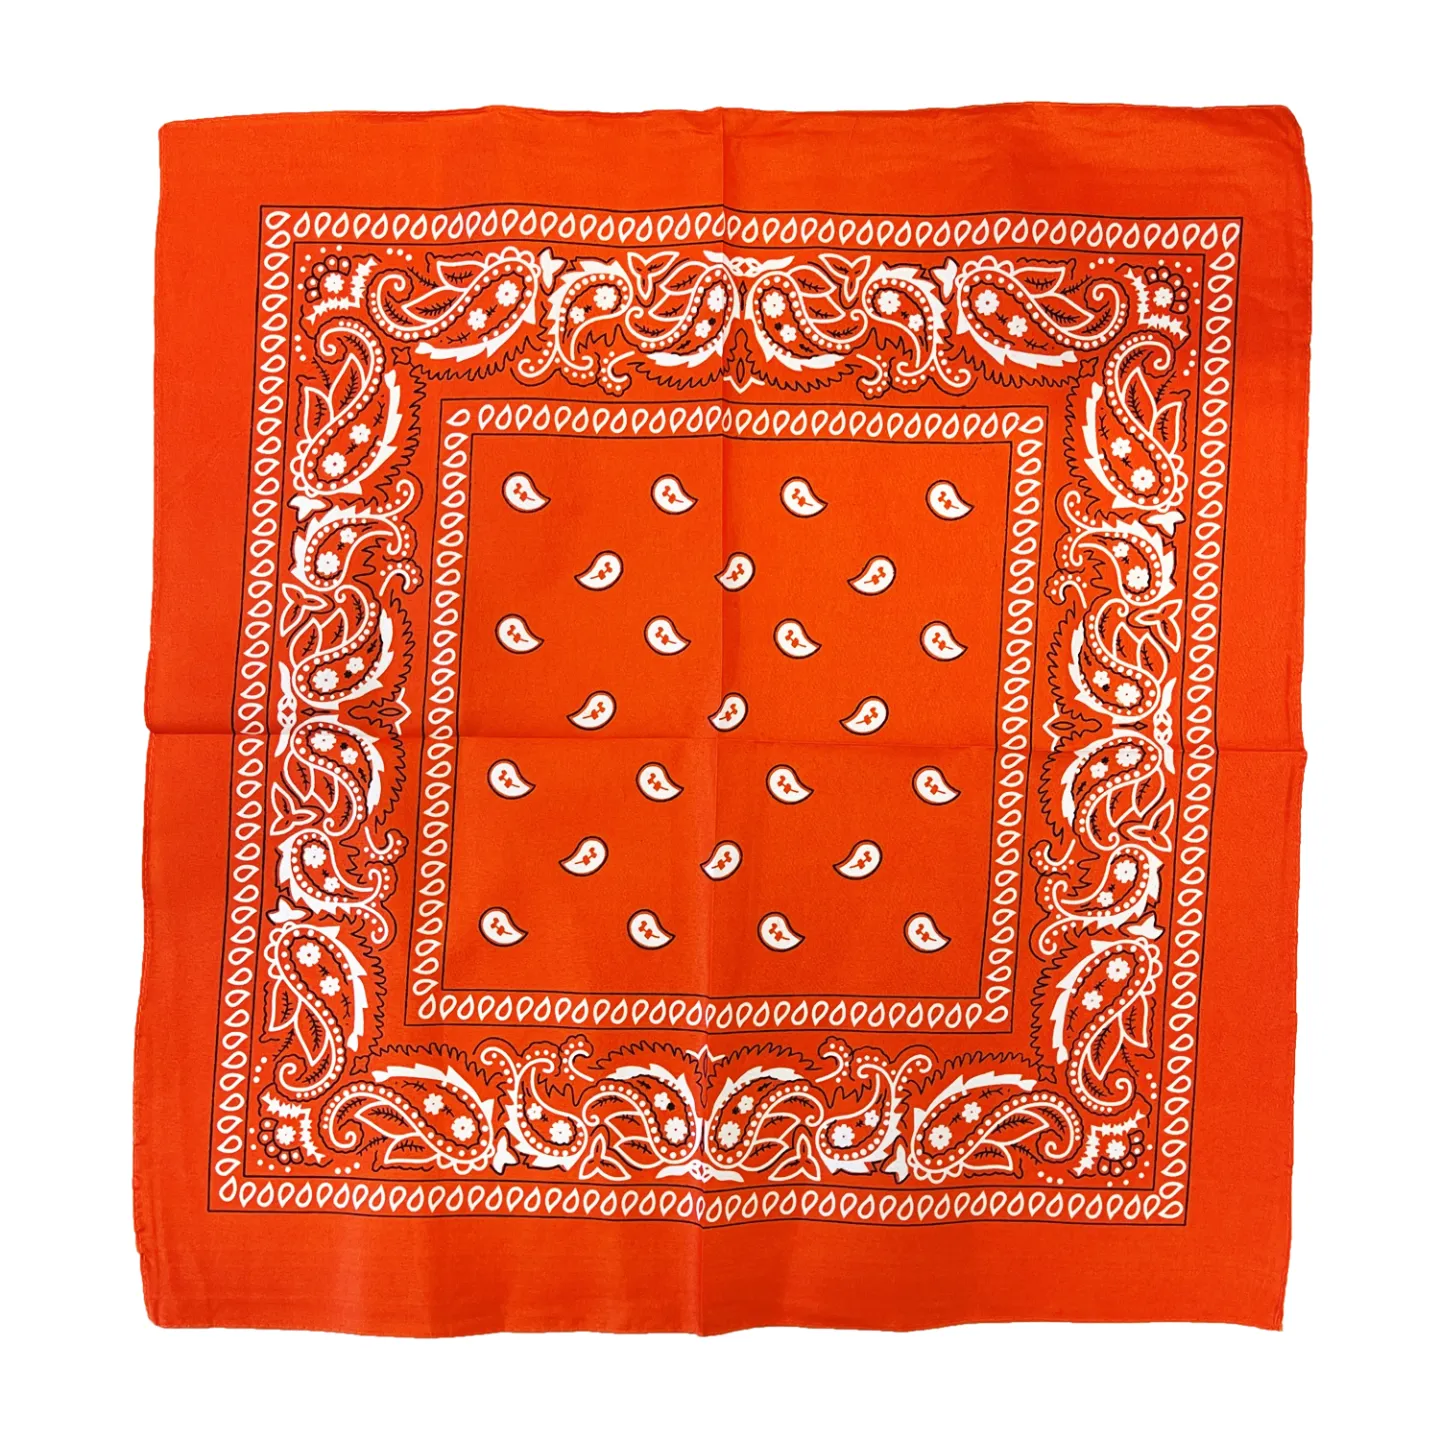 Koningsdag bandana oranje - 53 x 53cm.